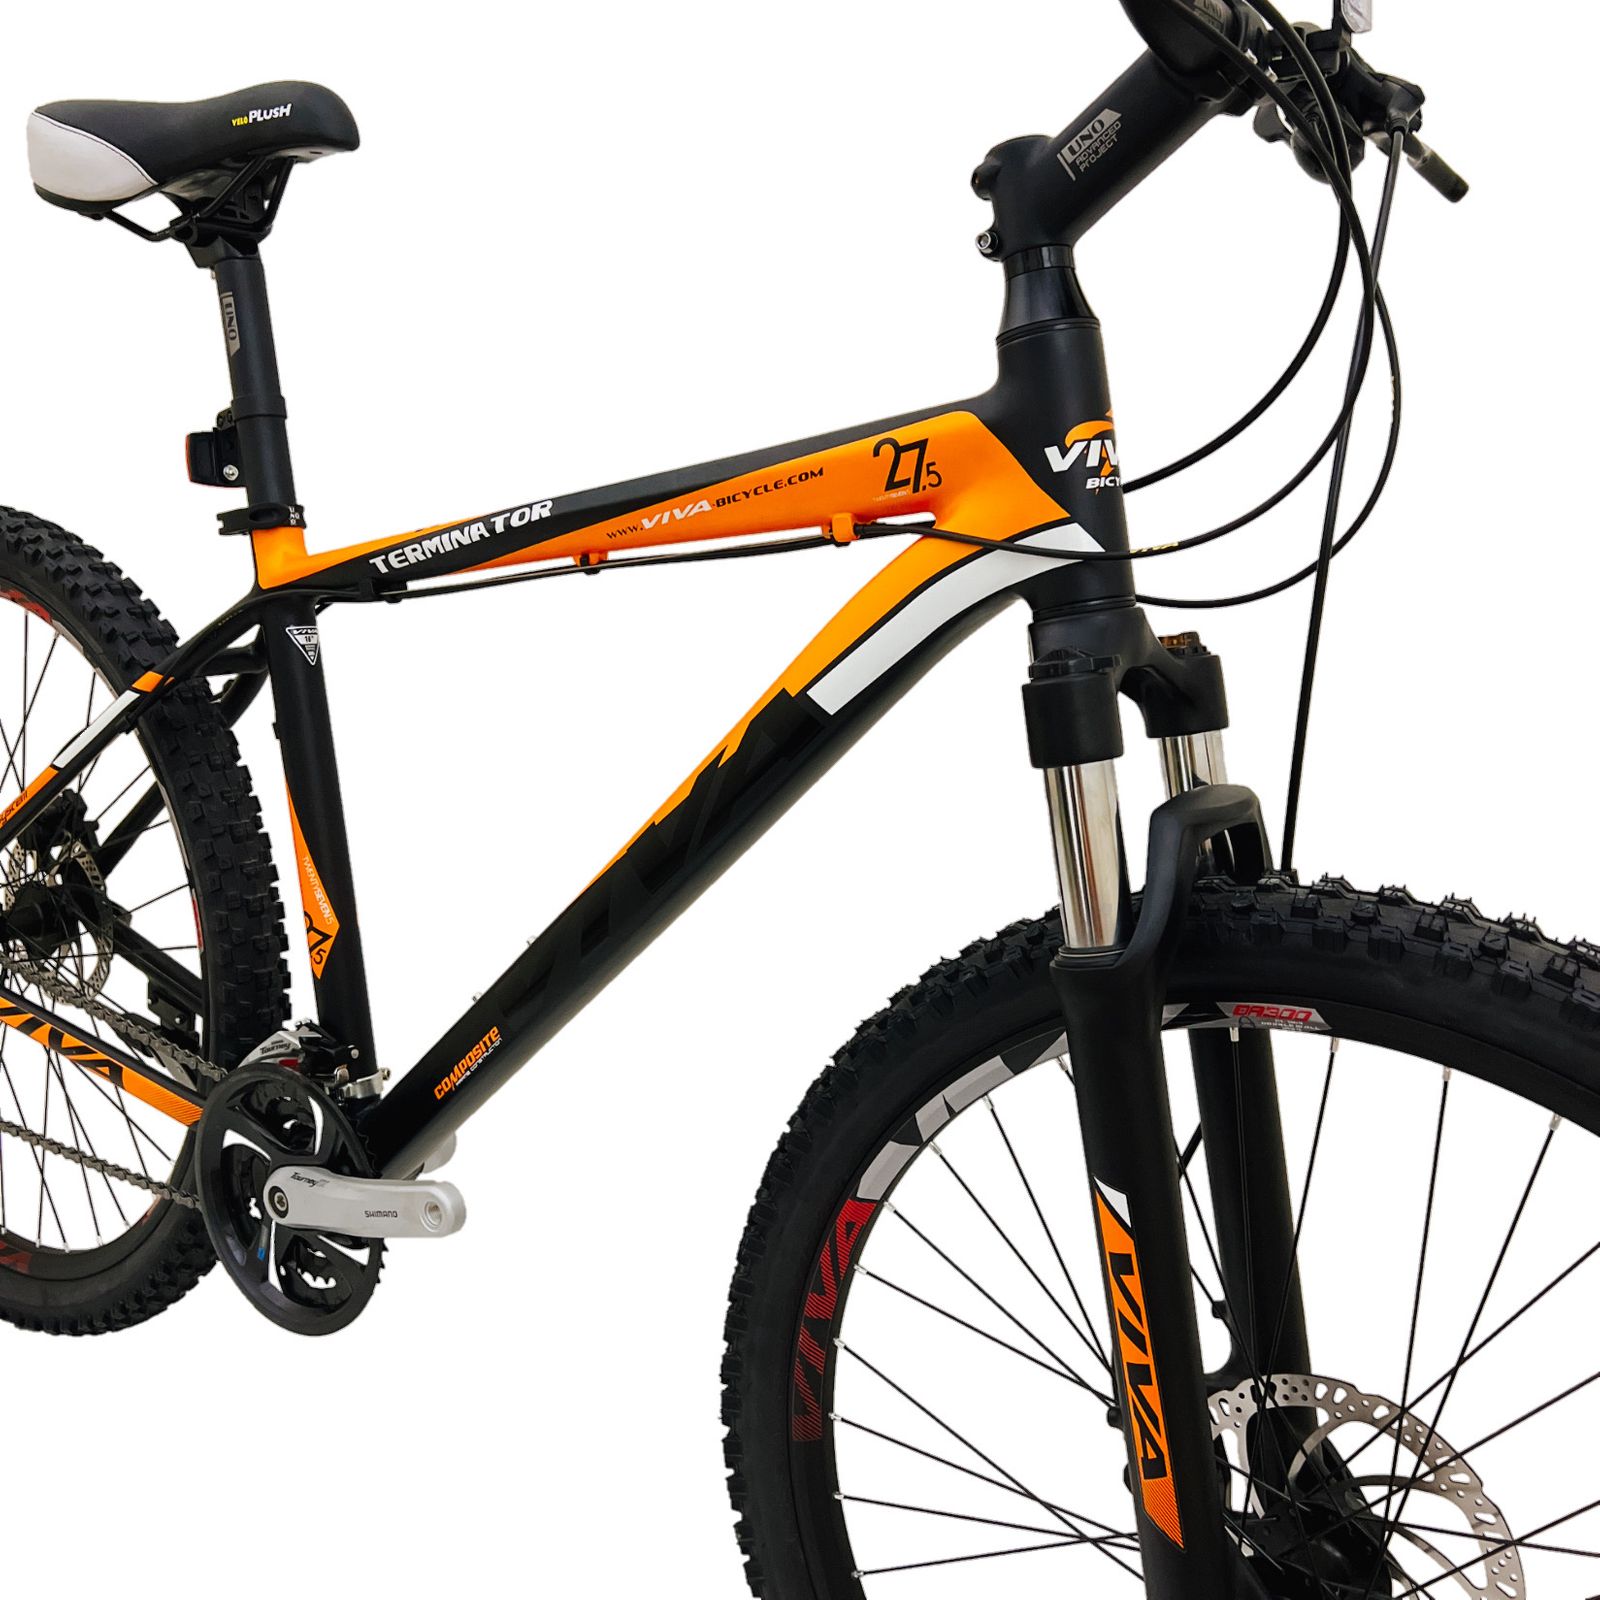 دوچرخه کوهستان ویوا مدل TERMINATOR کد هیدرولیک سایز 27.5 -  - 6